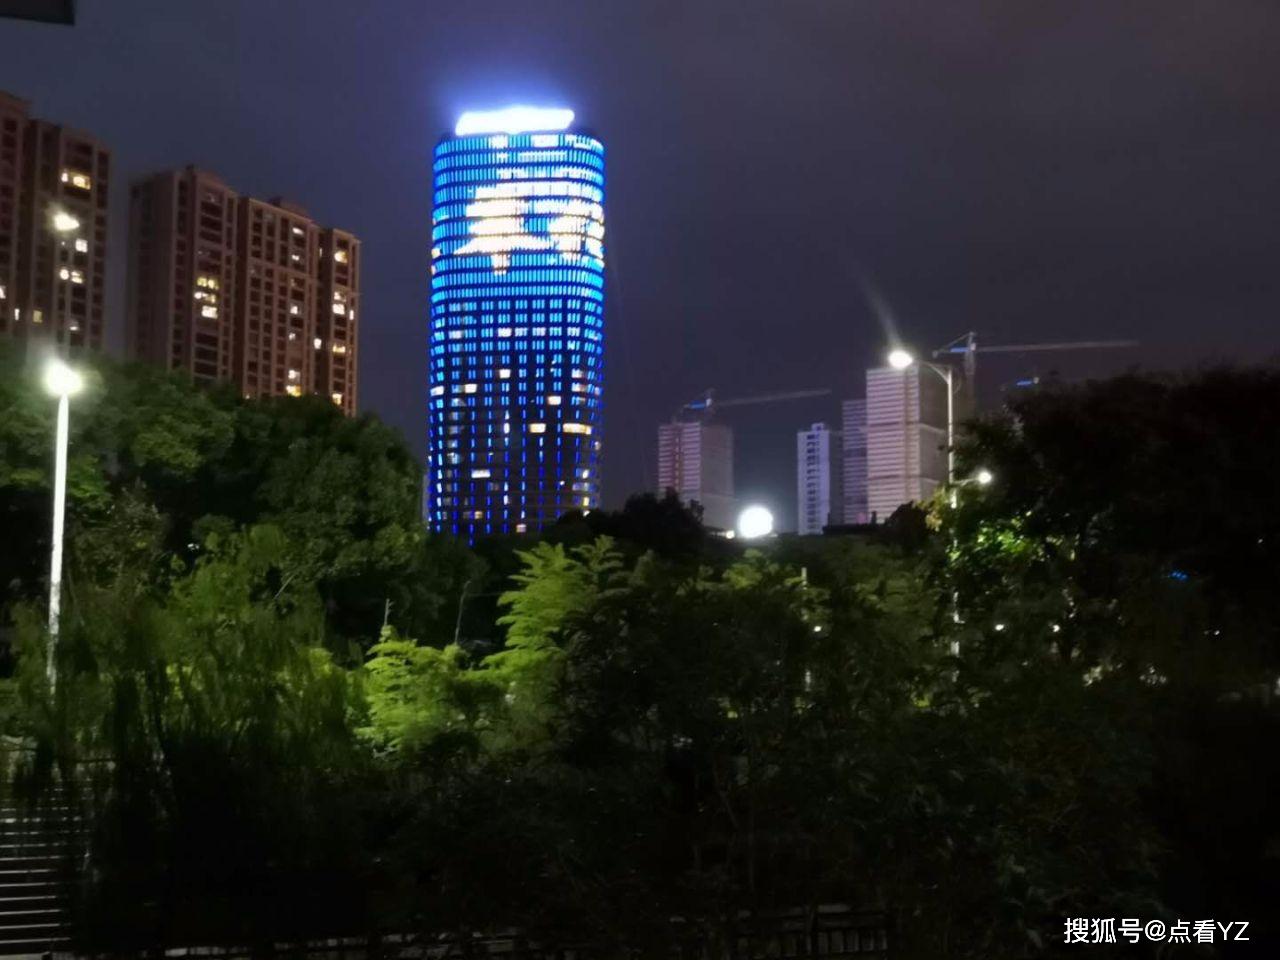 还有中山公园,银泰城/恵政路上灯火辉煌……啊,夜晚的奉化,多么明亮